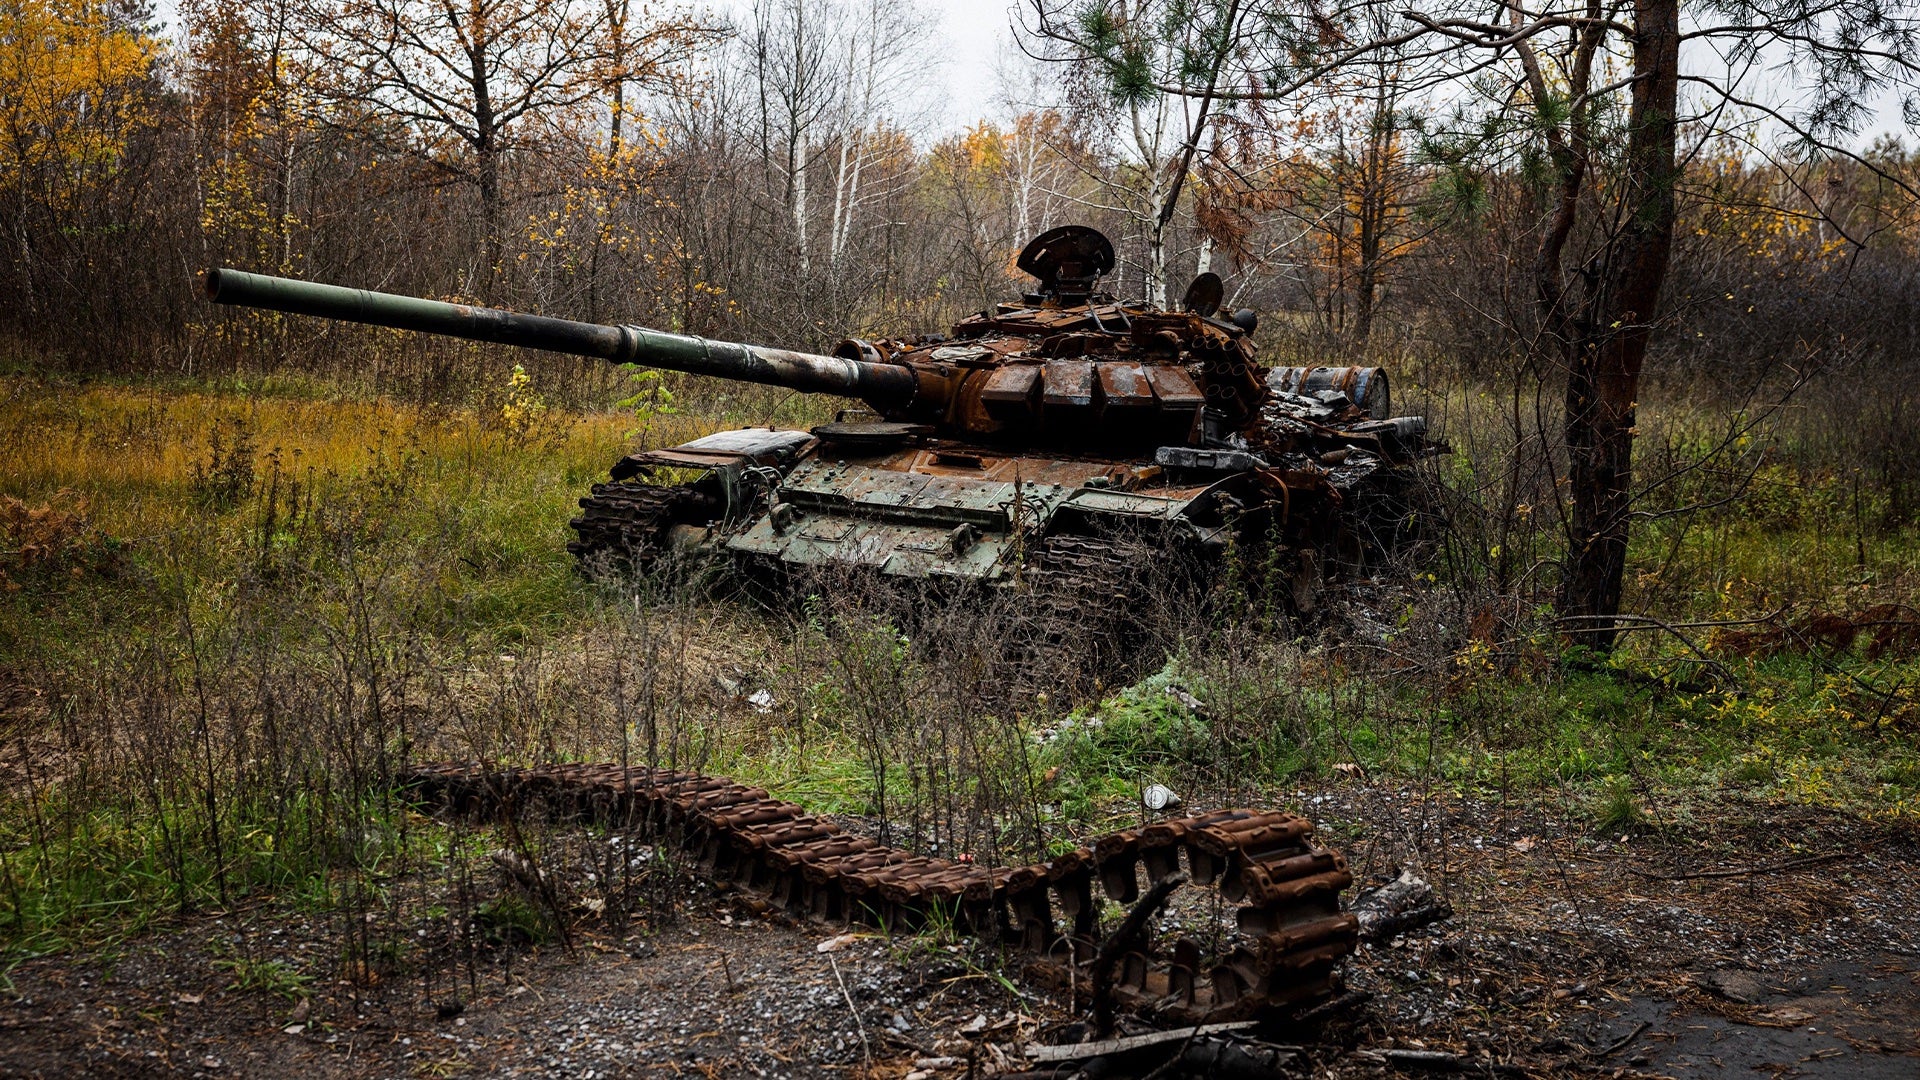 Russia Likely Lost Half Its Main Battle Tanks in Ukraine, Will Be Weaker:  Pentagon